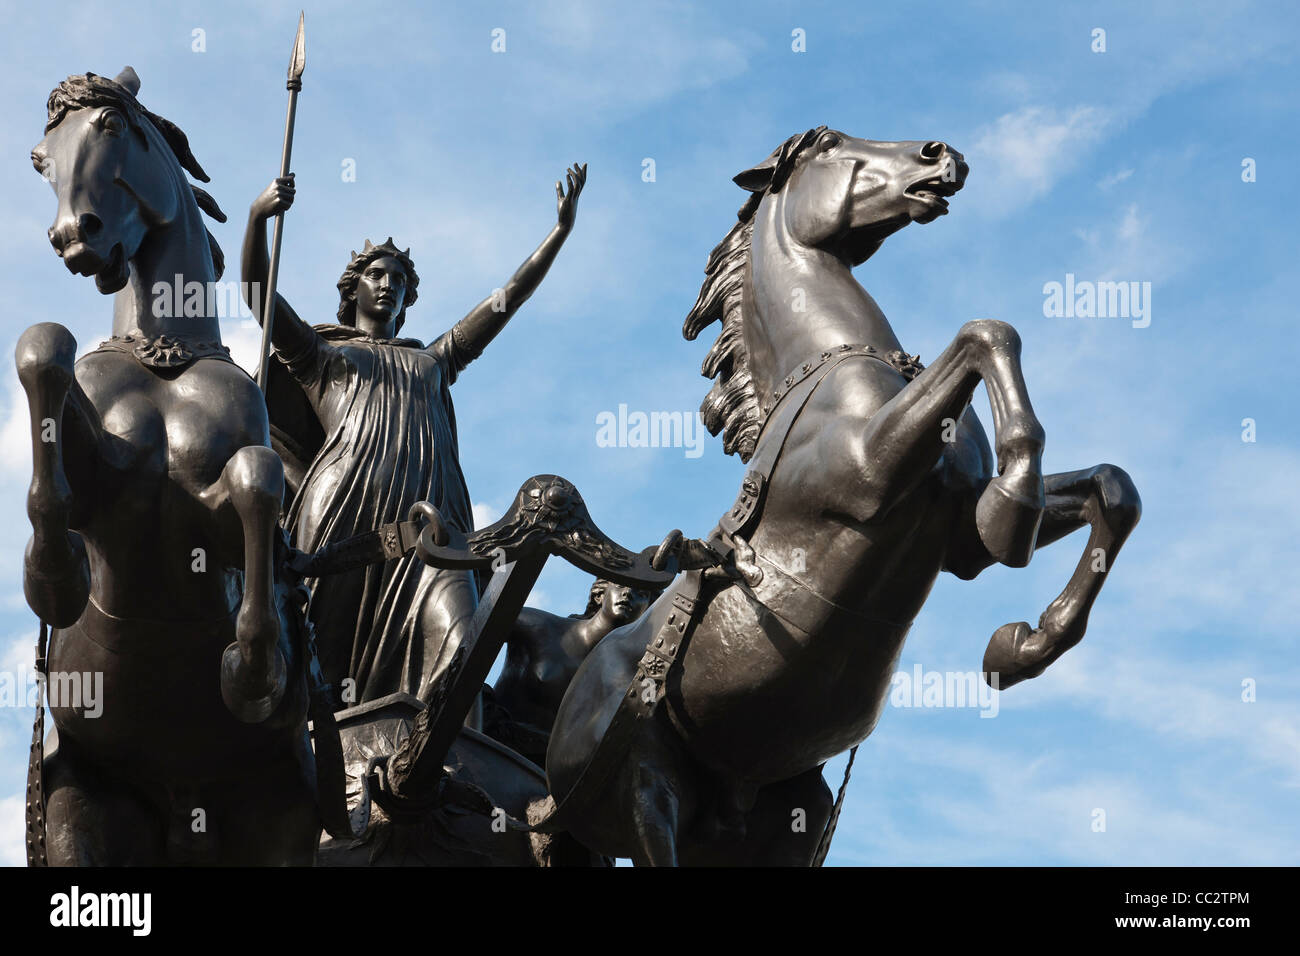 Eine Skulptur, die Darstellung der Kriegerkönigin Boudicca die Icener mit ihren Töchtern, in der Nähe von Westminster Pier, London, England. Stockfoto